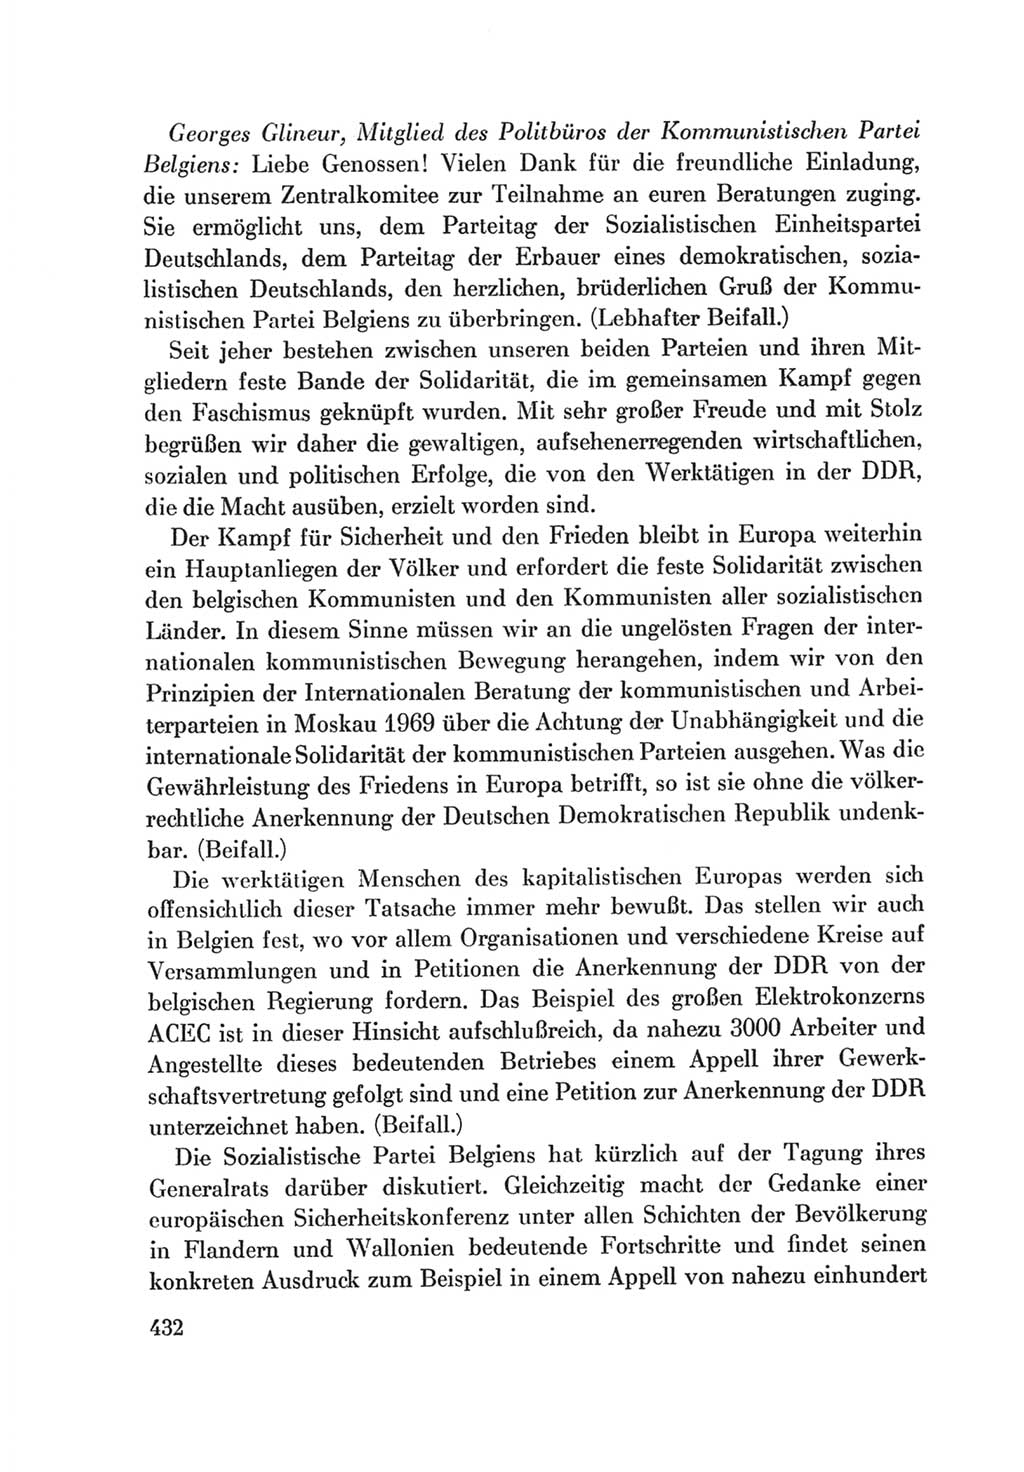 Protokoll der Verhandlungen des Ⅷ. Parteitages der Sozialistischen Einheitspartei Deutschlands (SED) [Deutsche Demokratische Republik (DDR)] 1971, Band 1, Seite 432 (Prot. Verh. Ⅷ. PT SED DDR 1971, Bd. 1, S. 432)